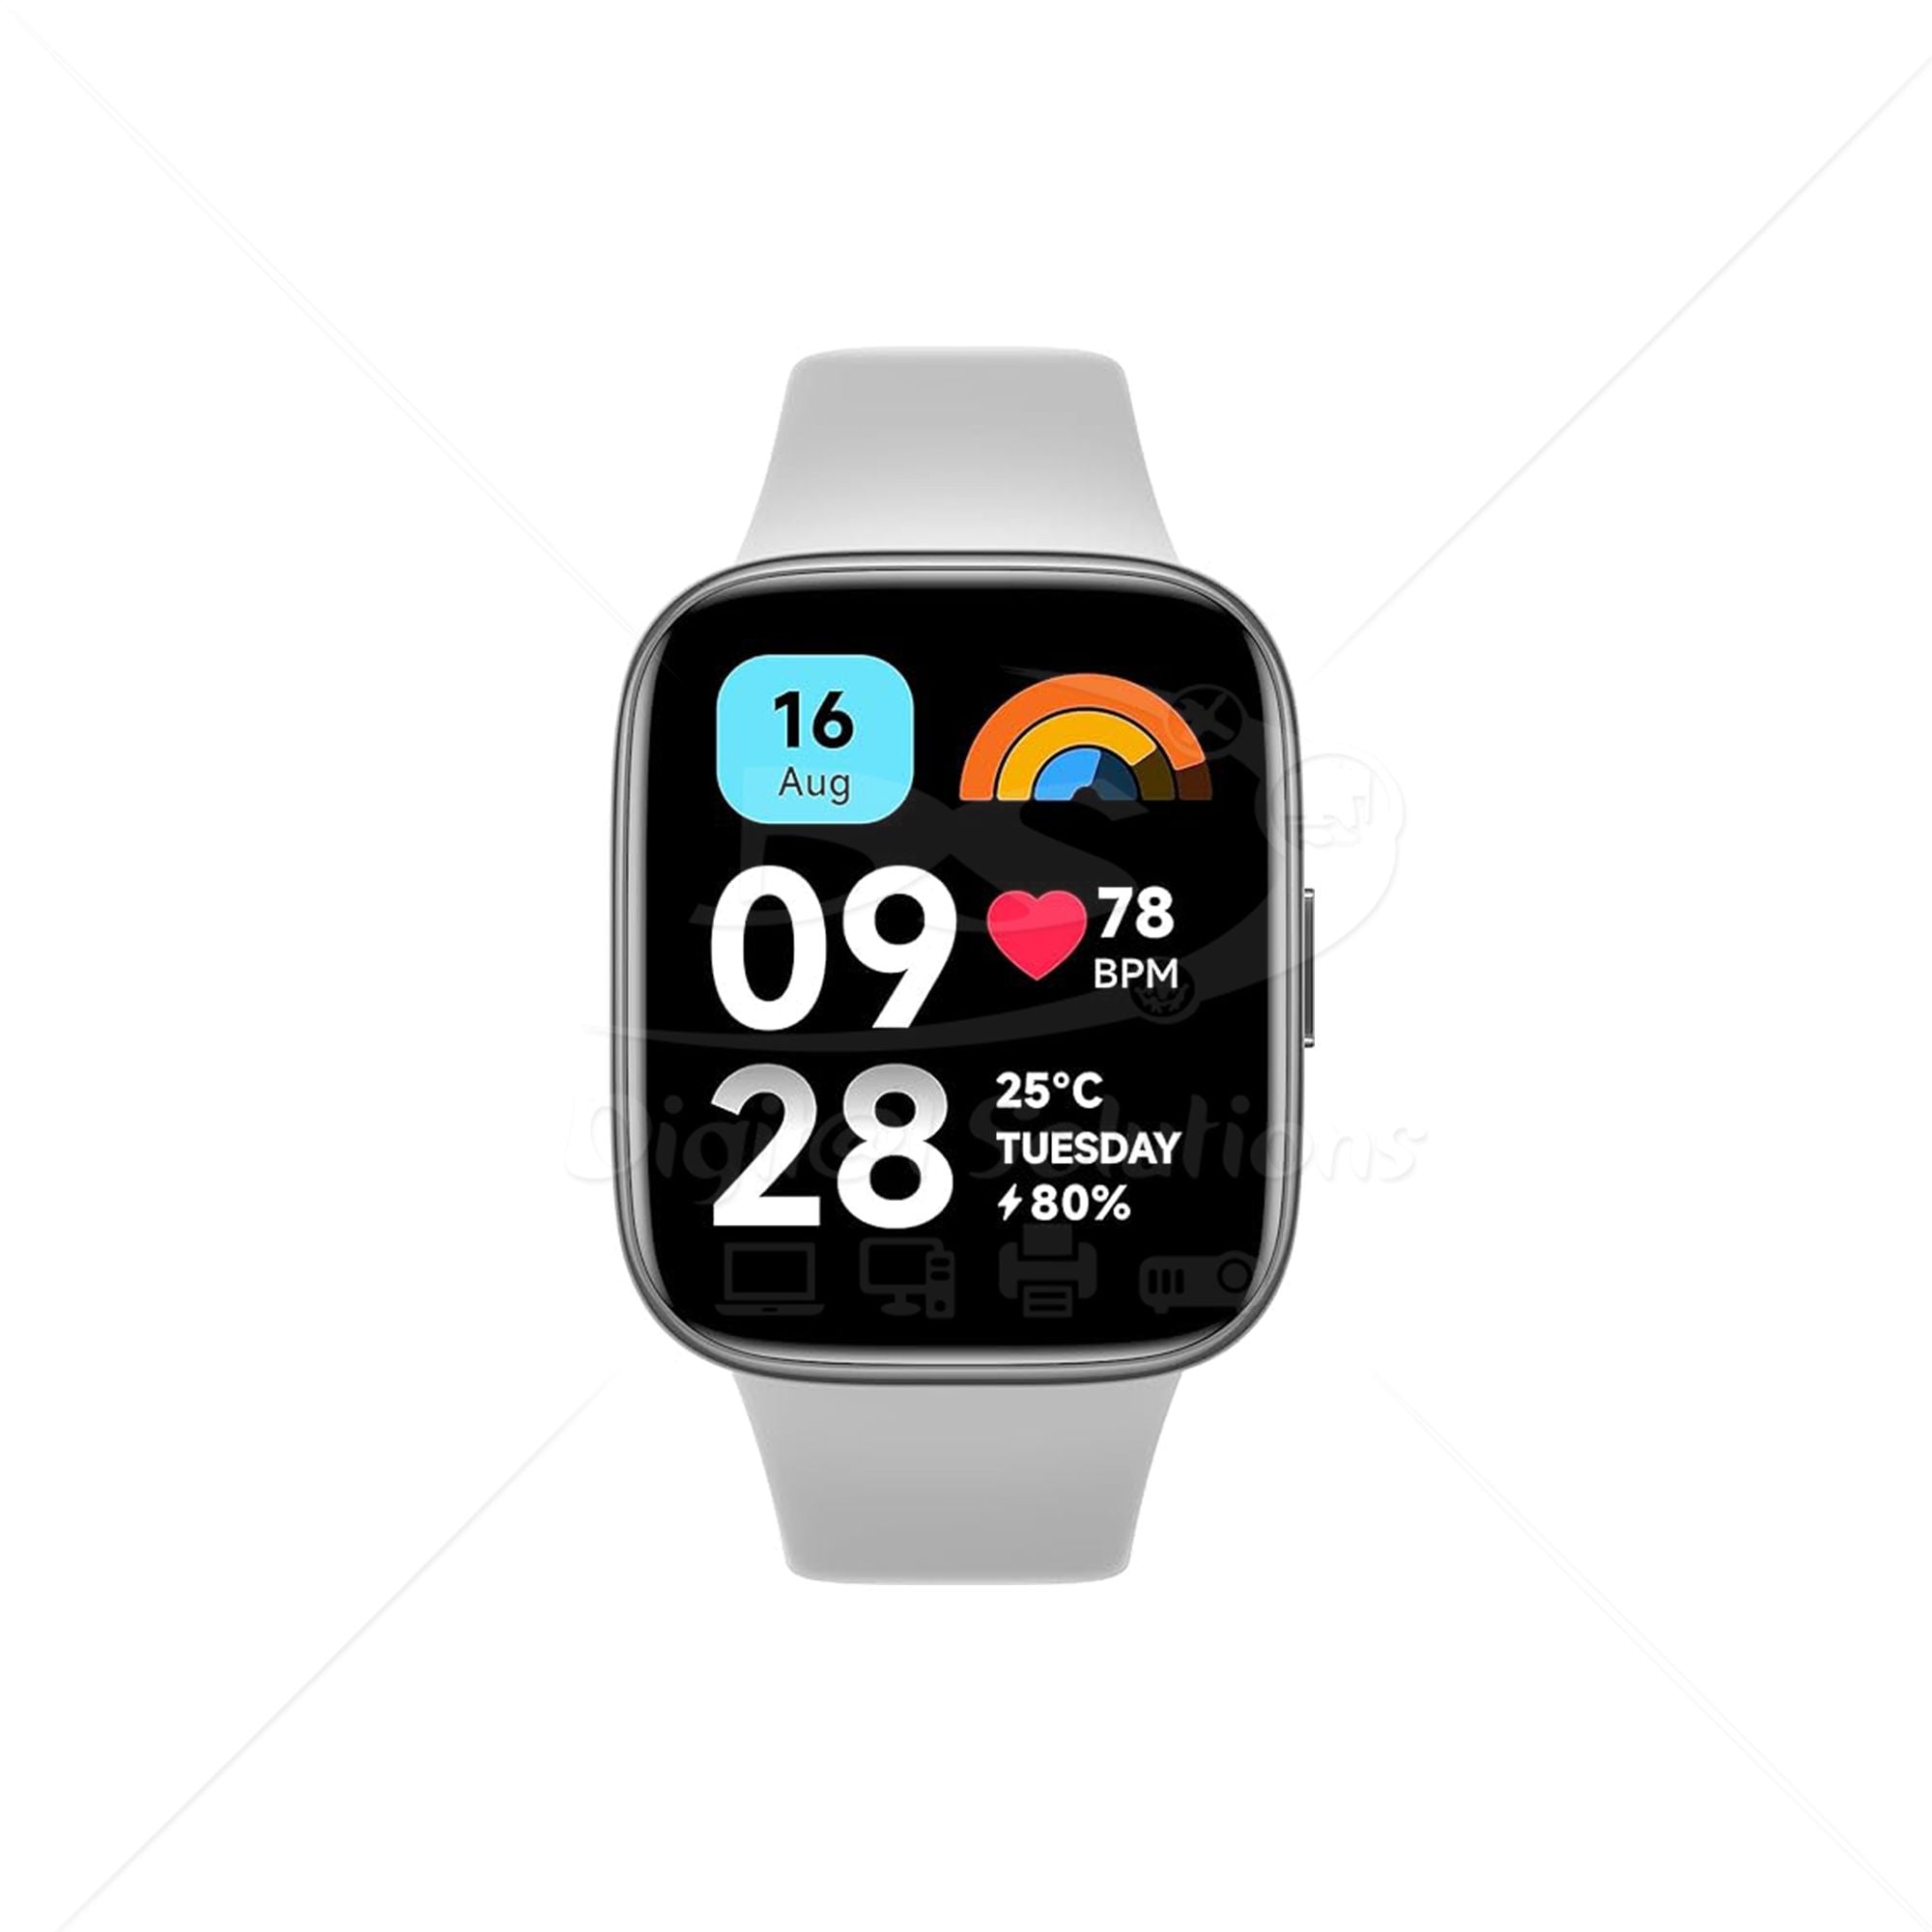 Wearable Xiaomi Redmi Watch 3 Active – Tienda en línea de Digit@l